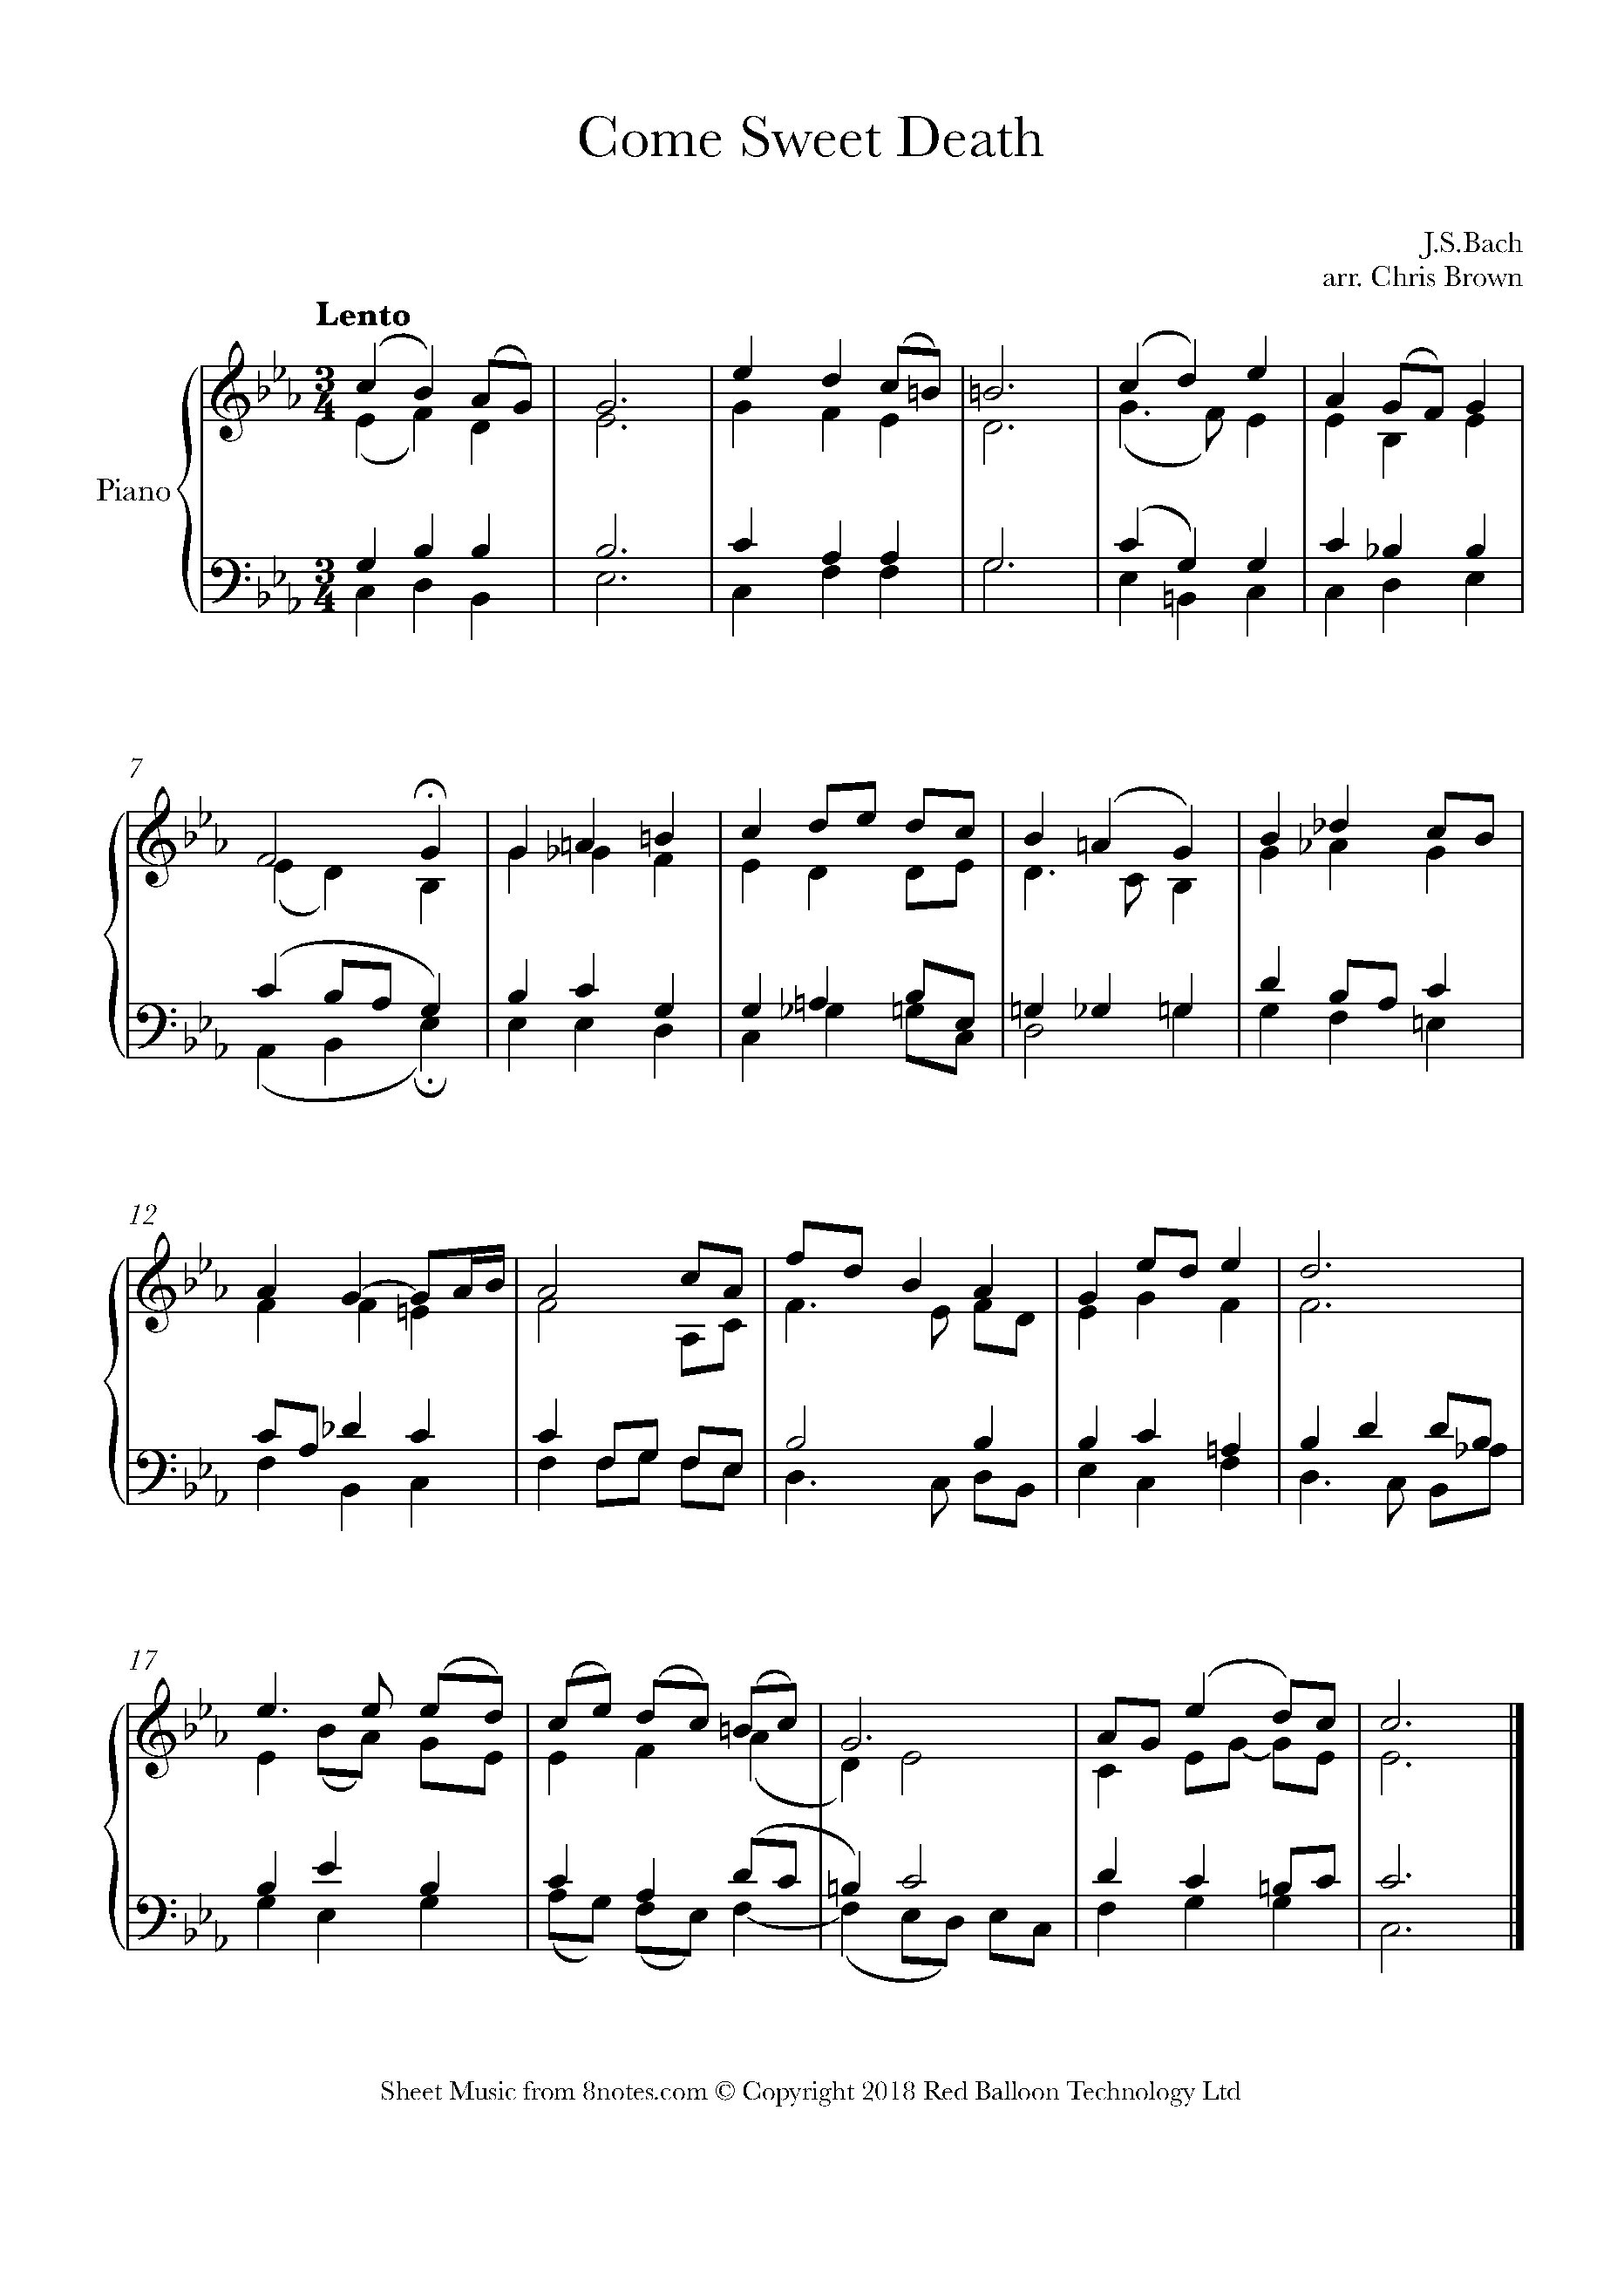 8notes Piano Chord Chart